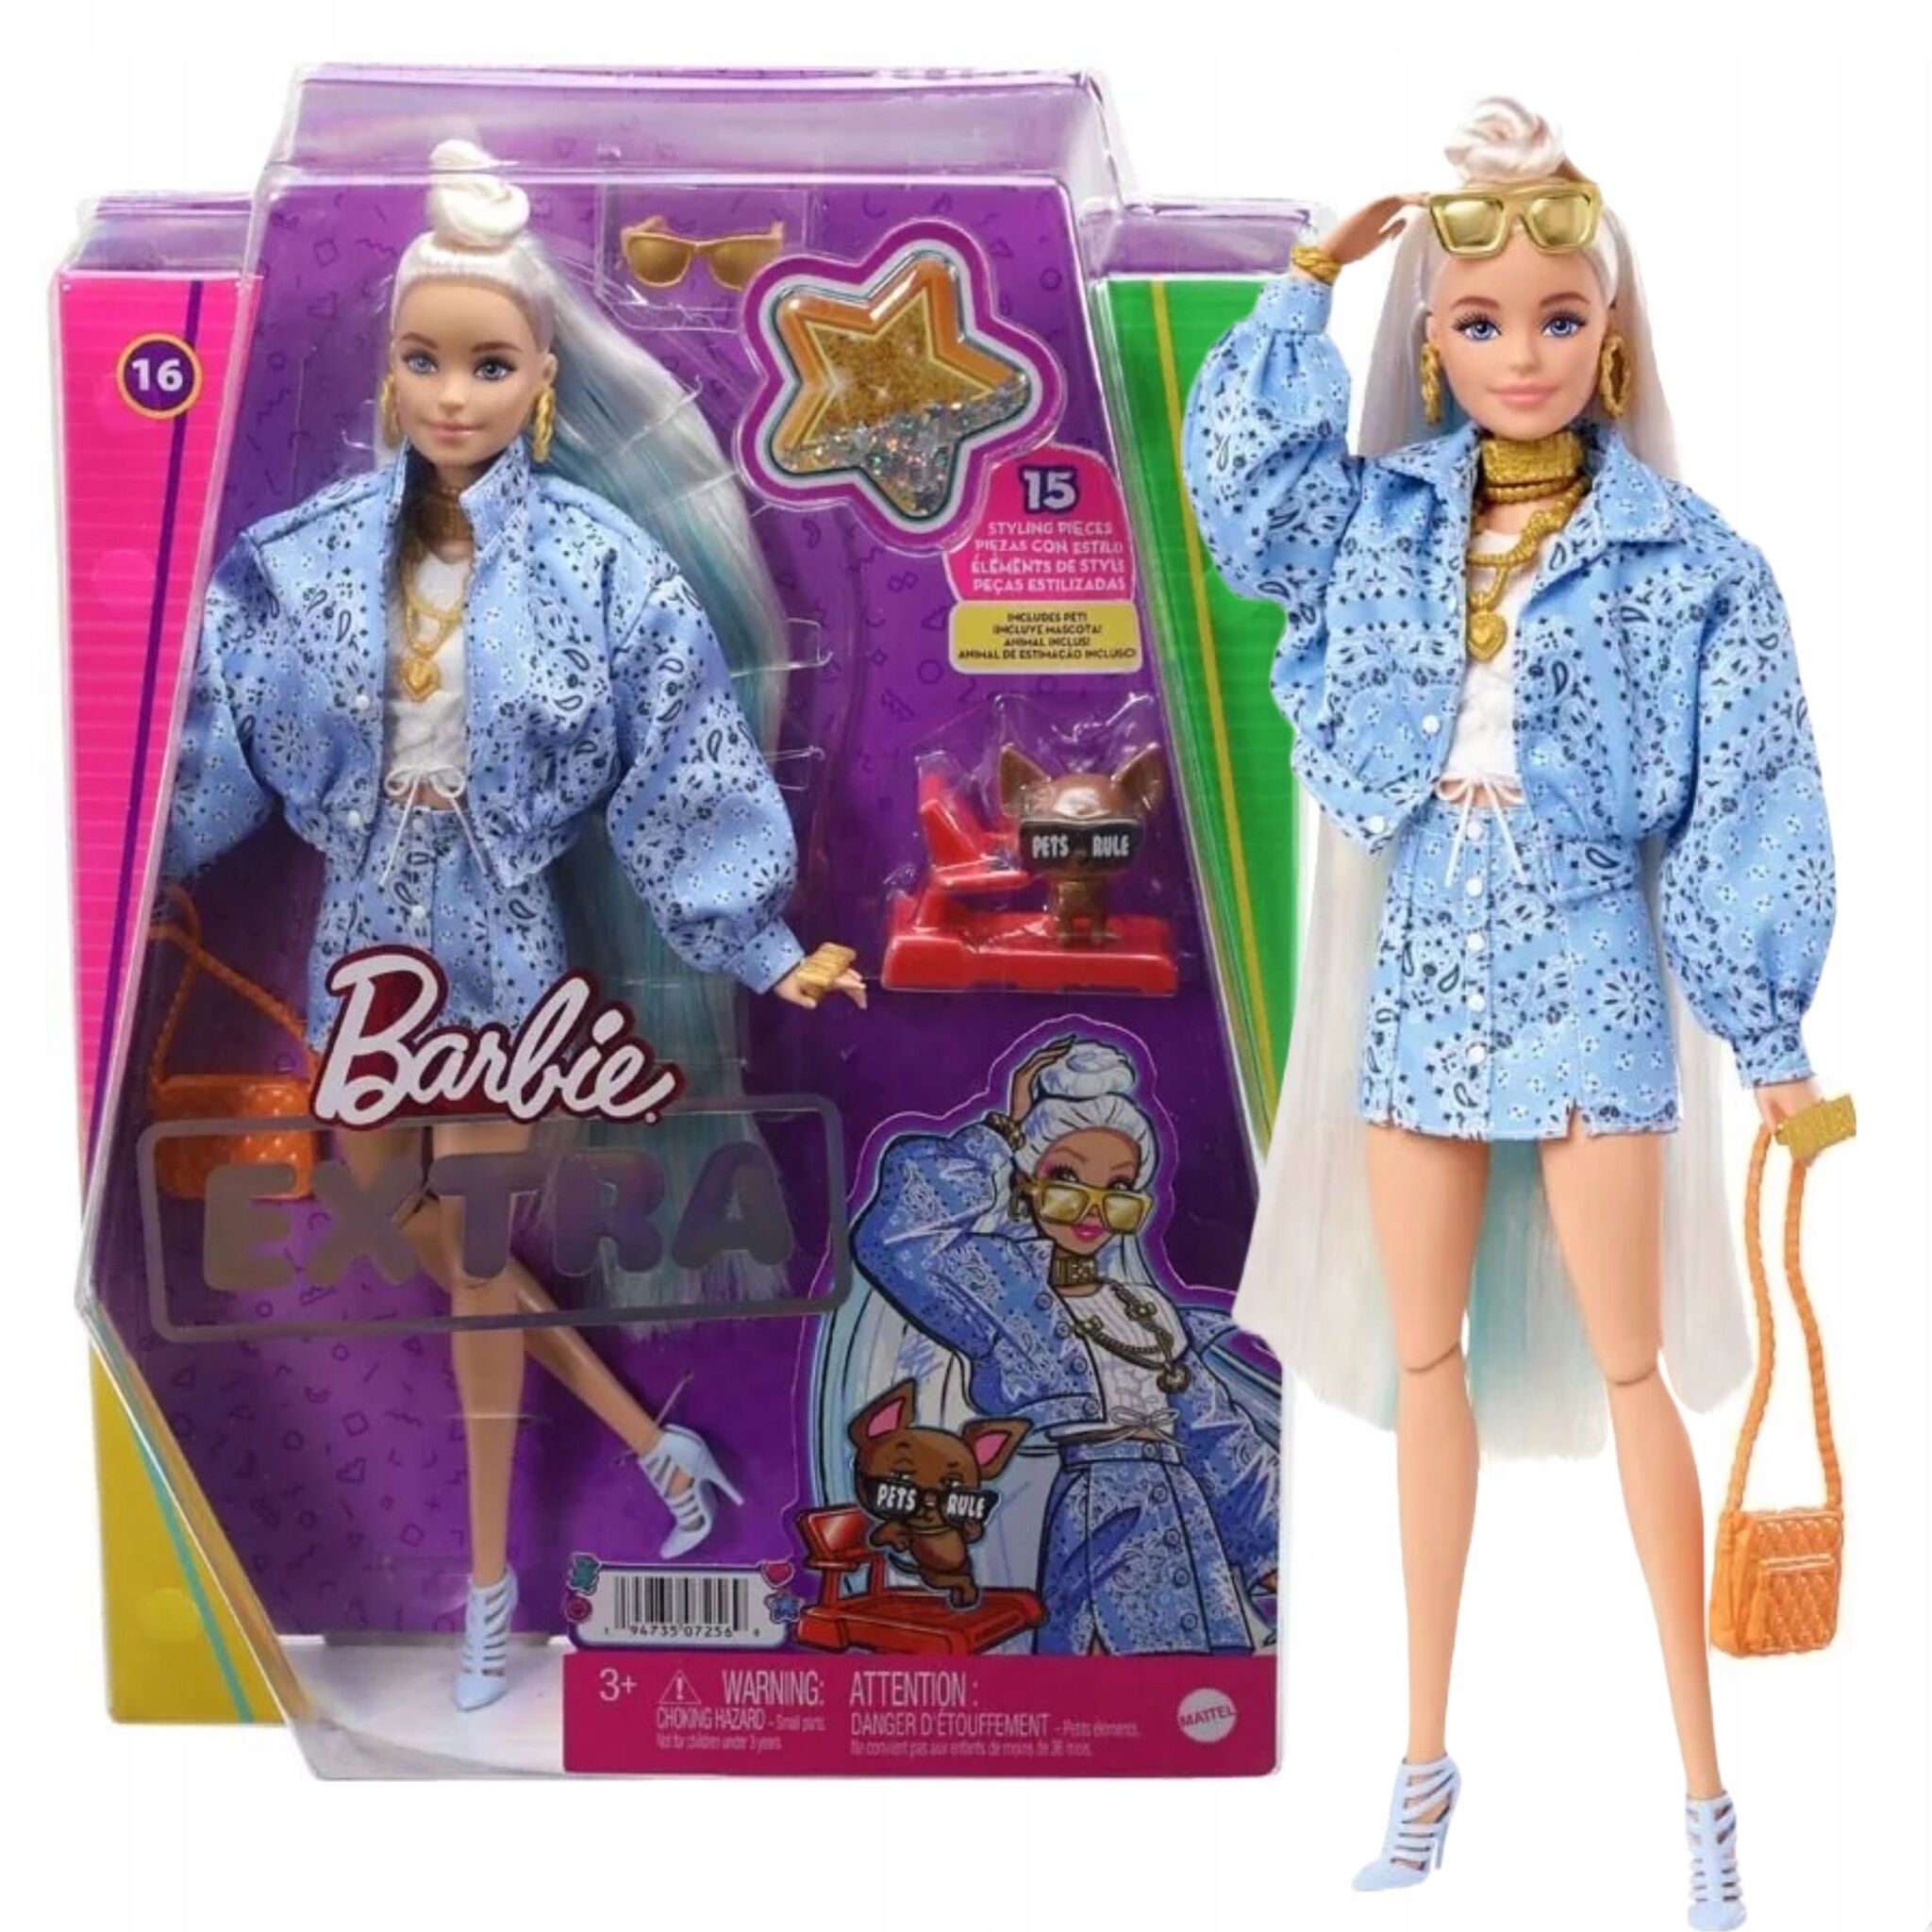 Кукла Mattel Barbie Extra - Экстра блондинка с голубыми прядями и собакой  чихуахуа - Барби HHN08 купить в Москве | Доставка по России.